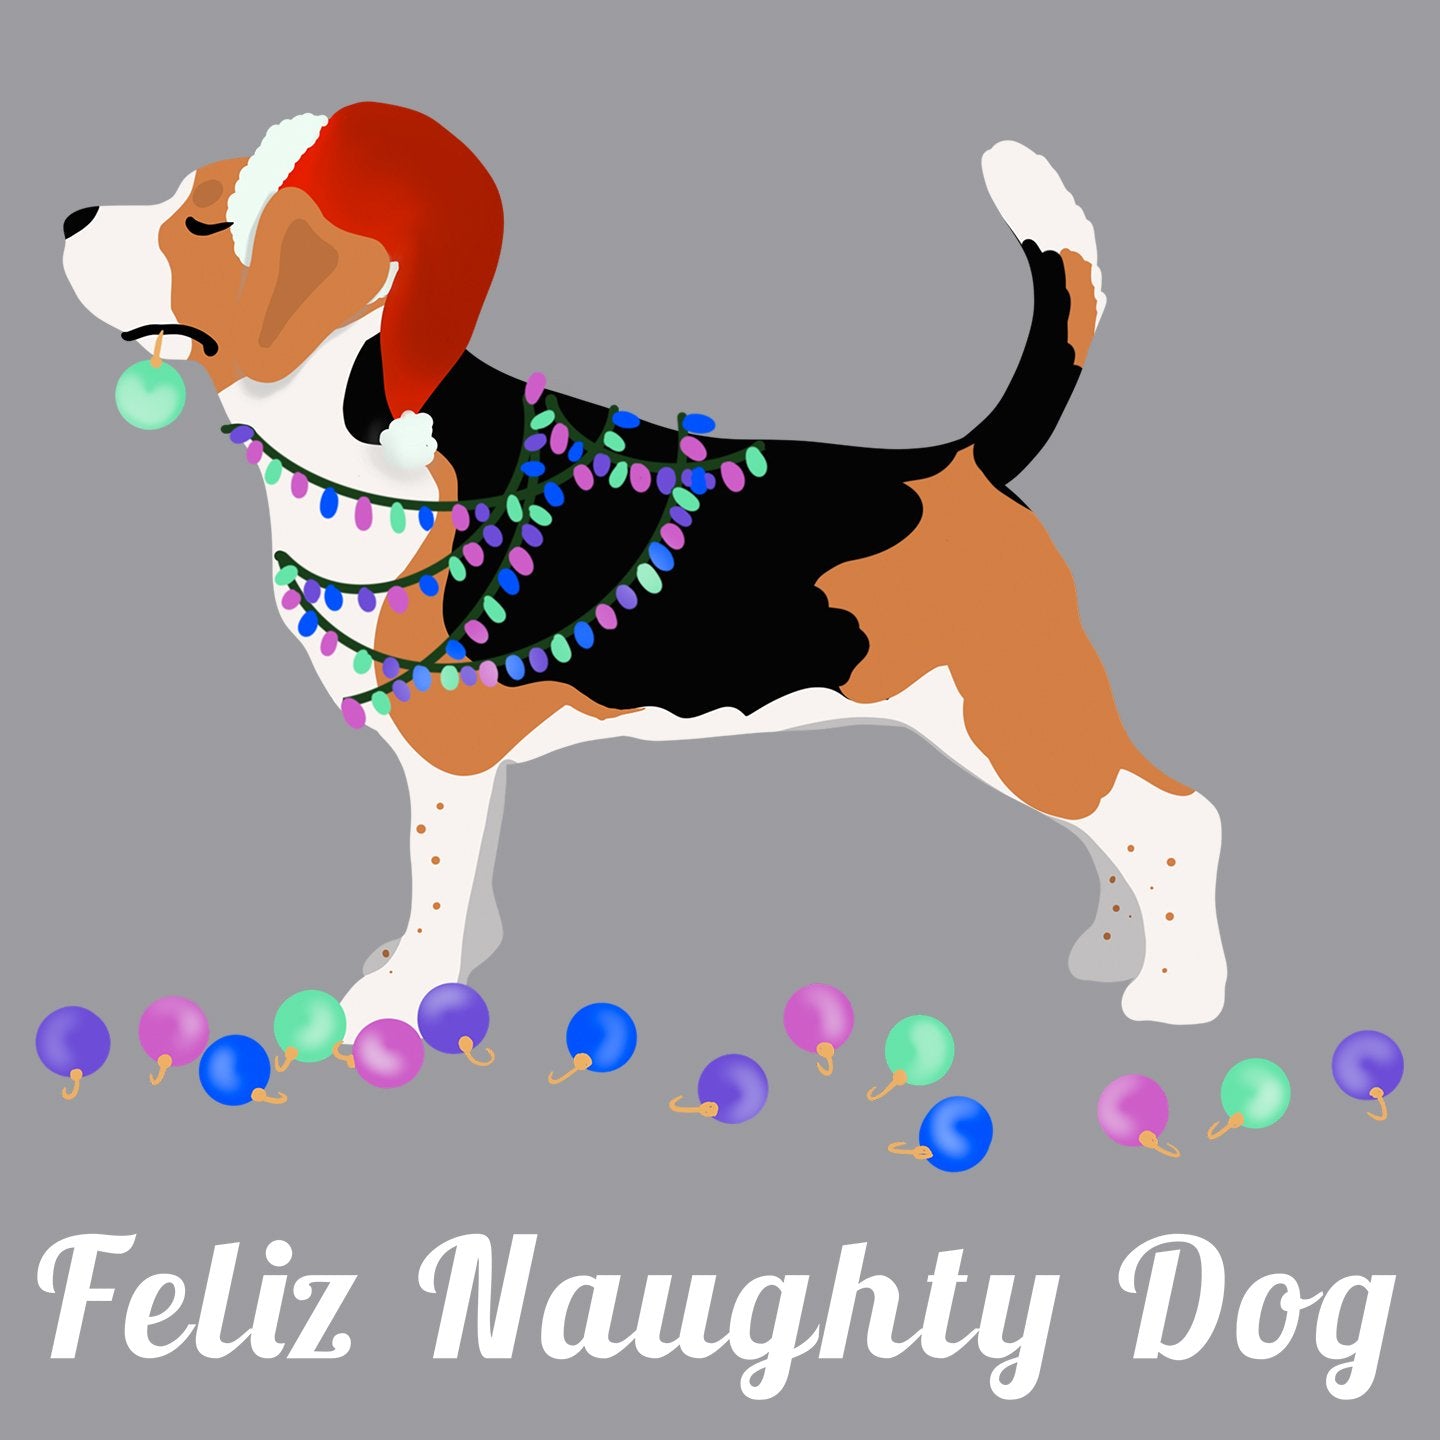 Feliz Naughty Dog Beagle - Adult Unisex T-Shirt